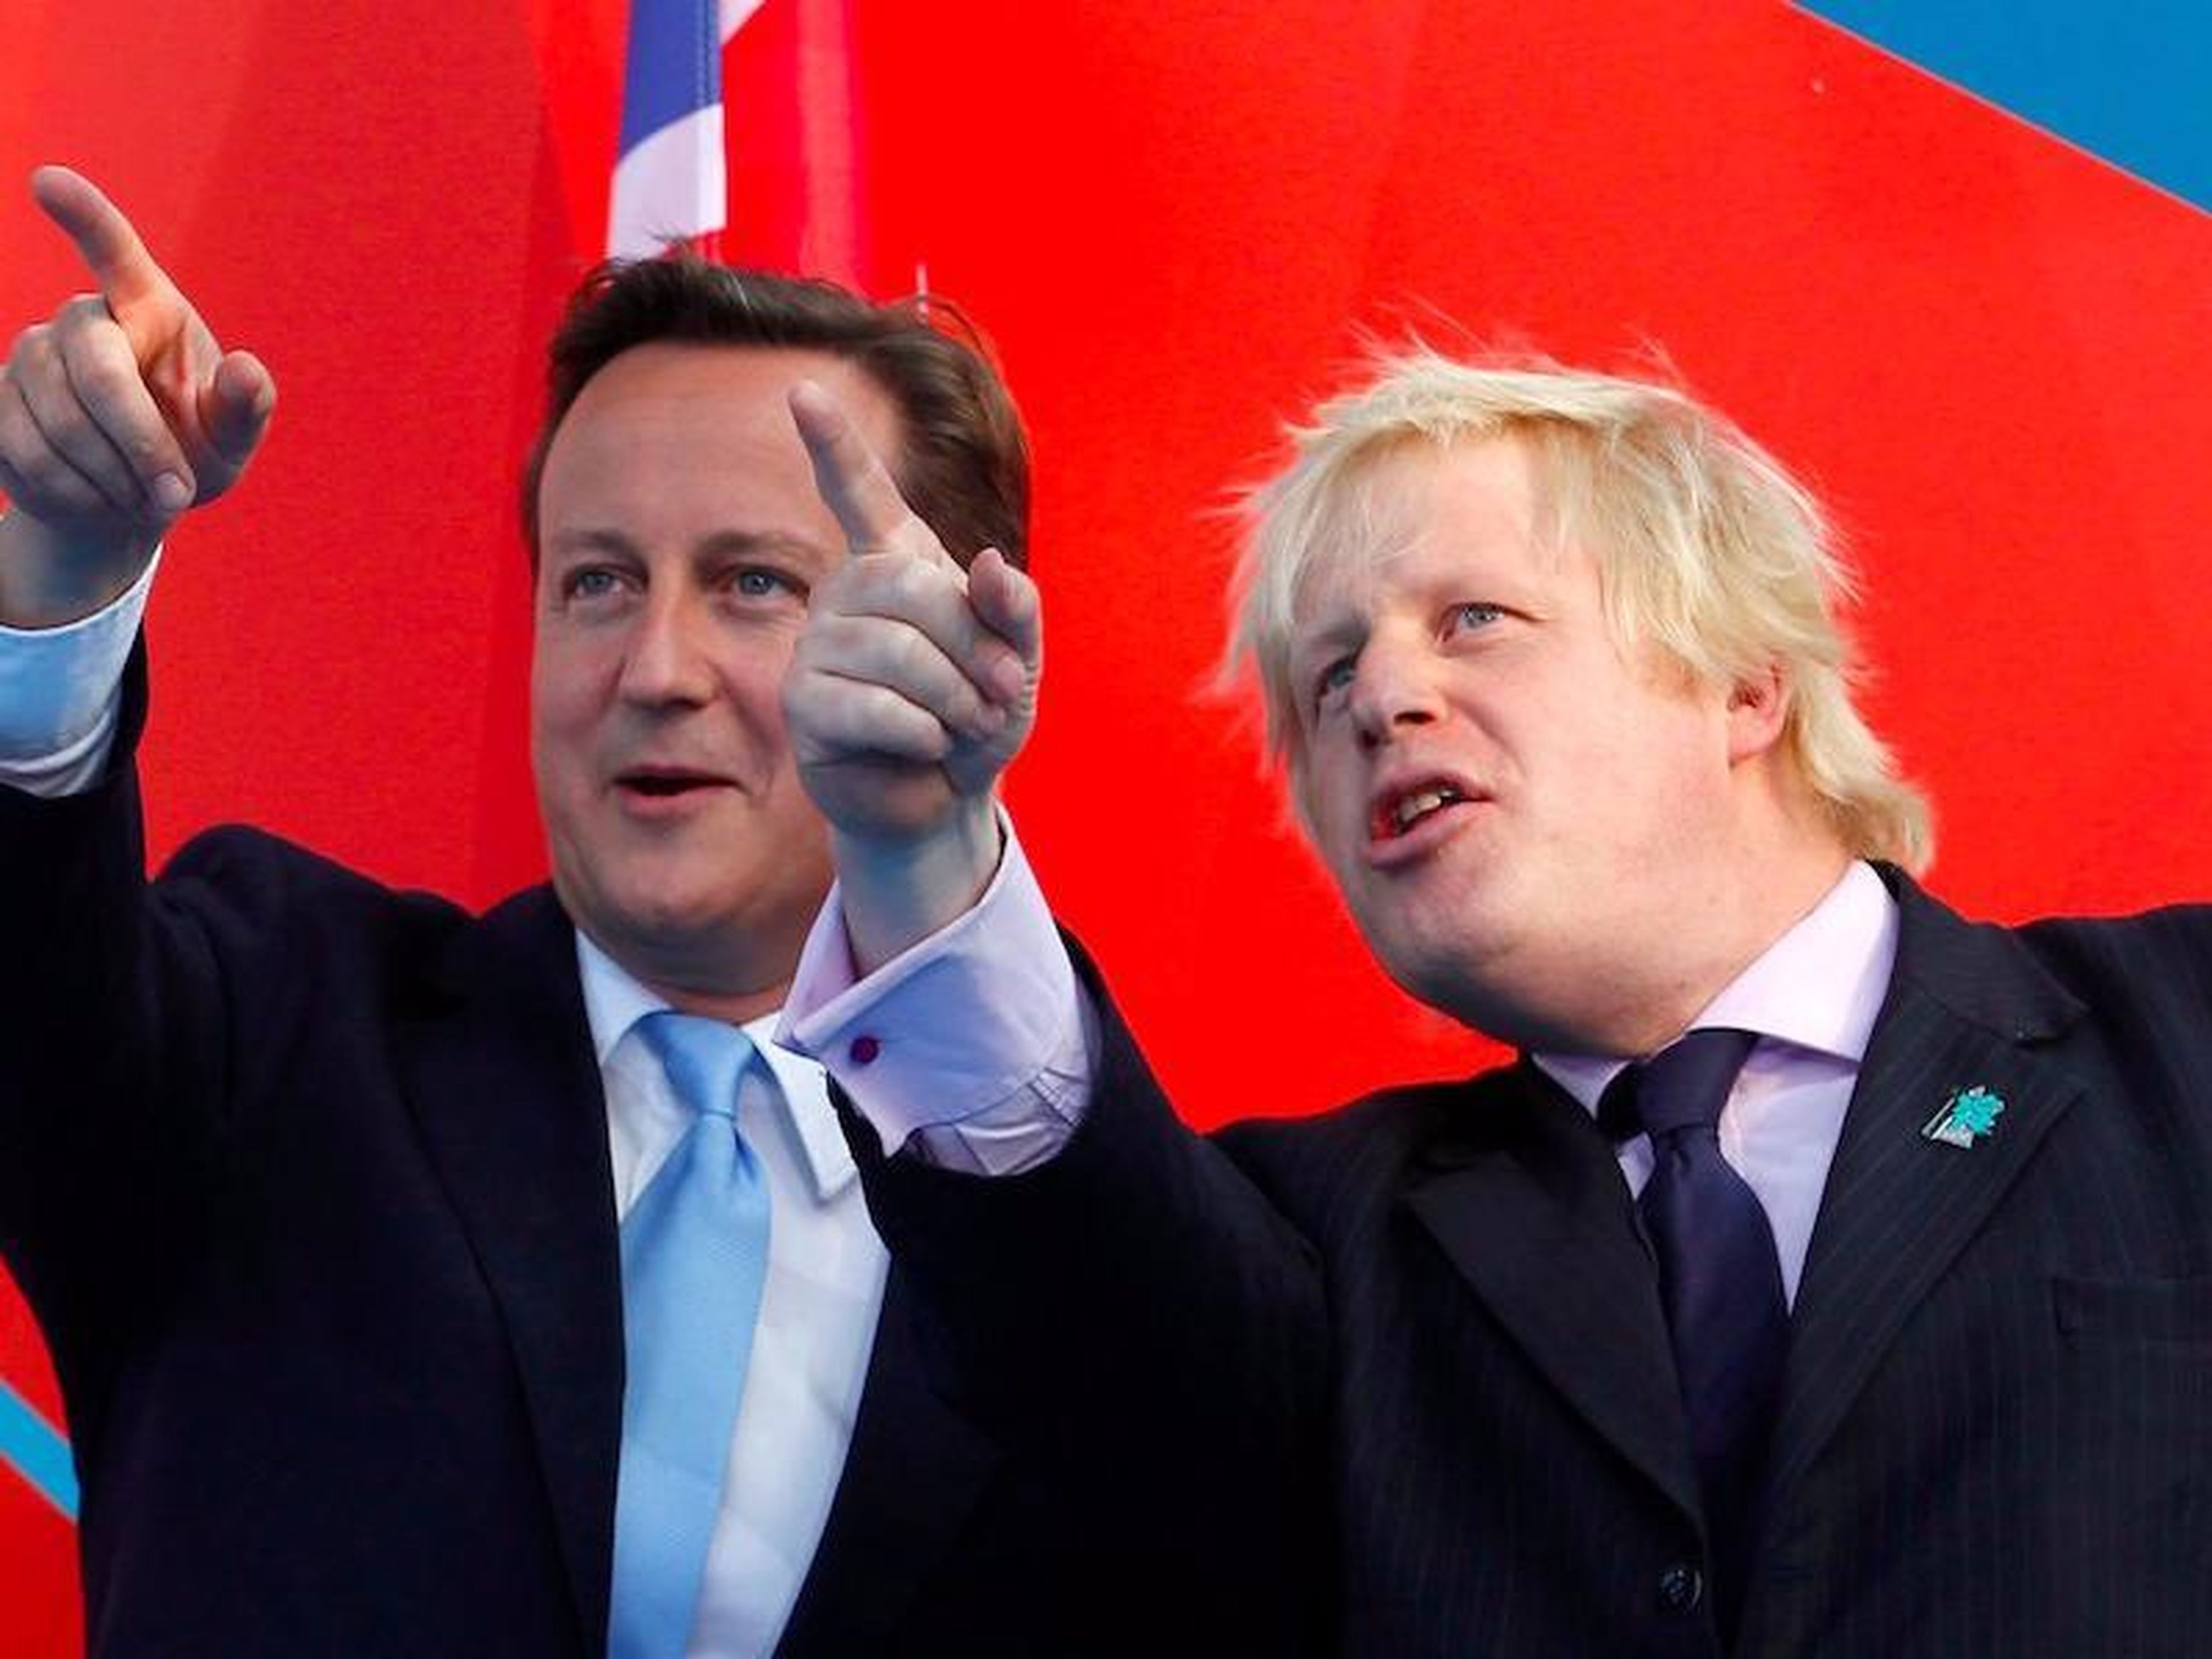 Después de que en 2015 circulasen rumores sobre la dimisión de Cameron, el nombre de Boris surgió como posible reemplazo. Cameron lo mencionó como posible sucesor.